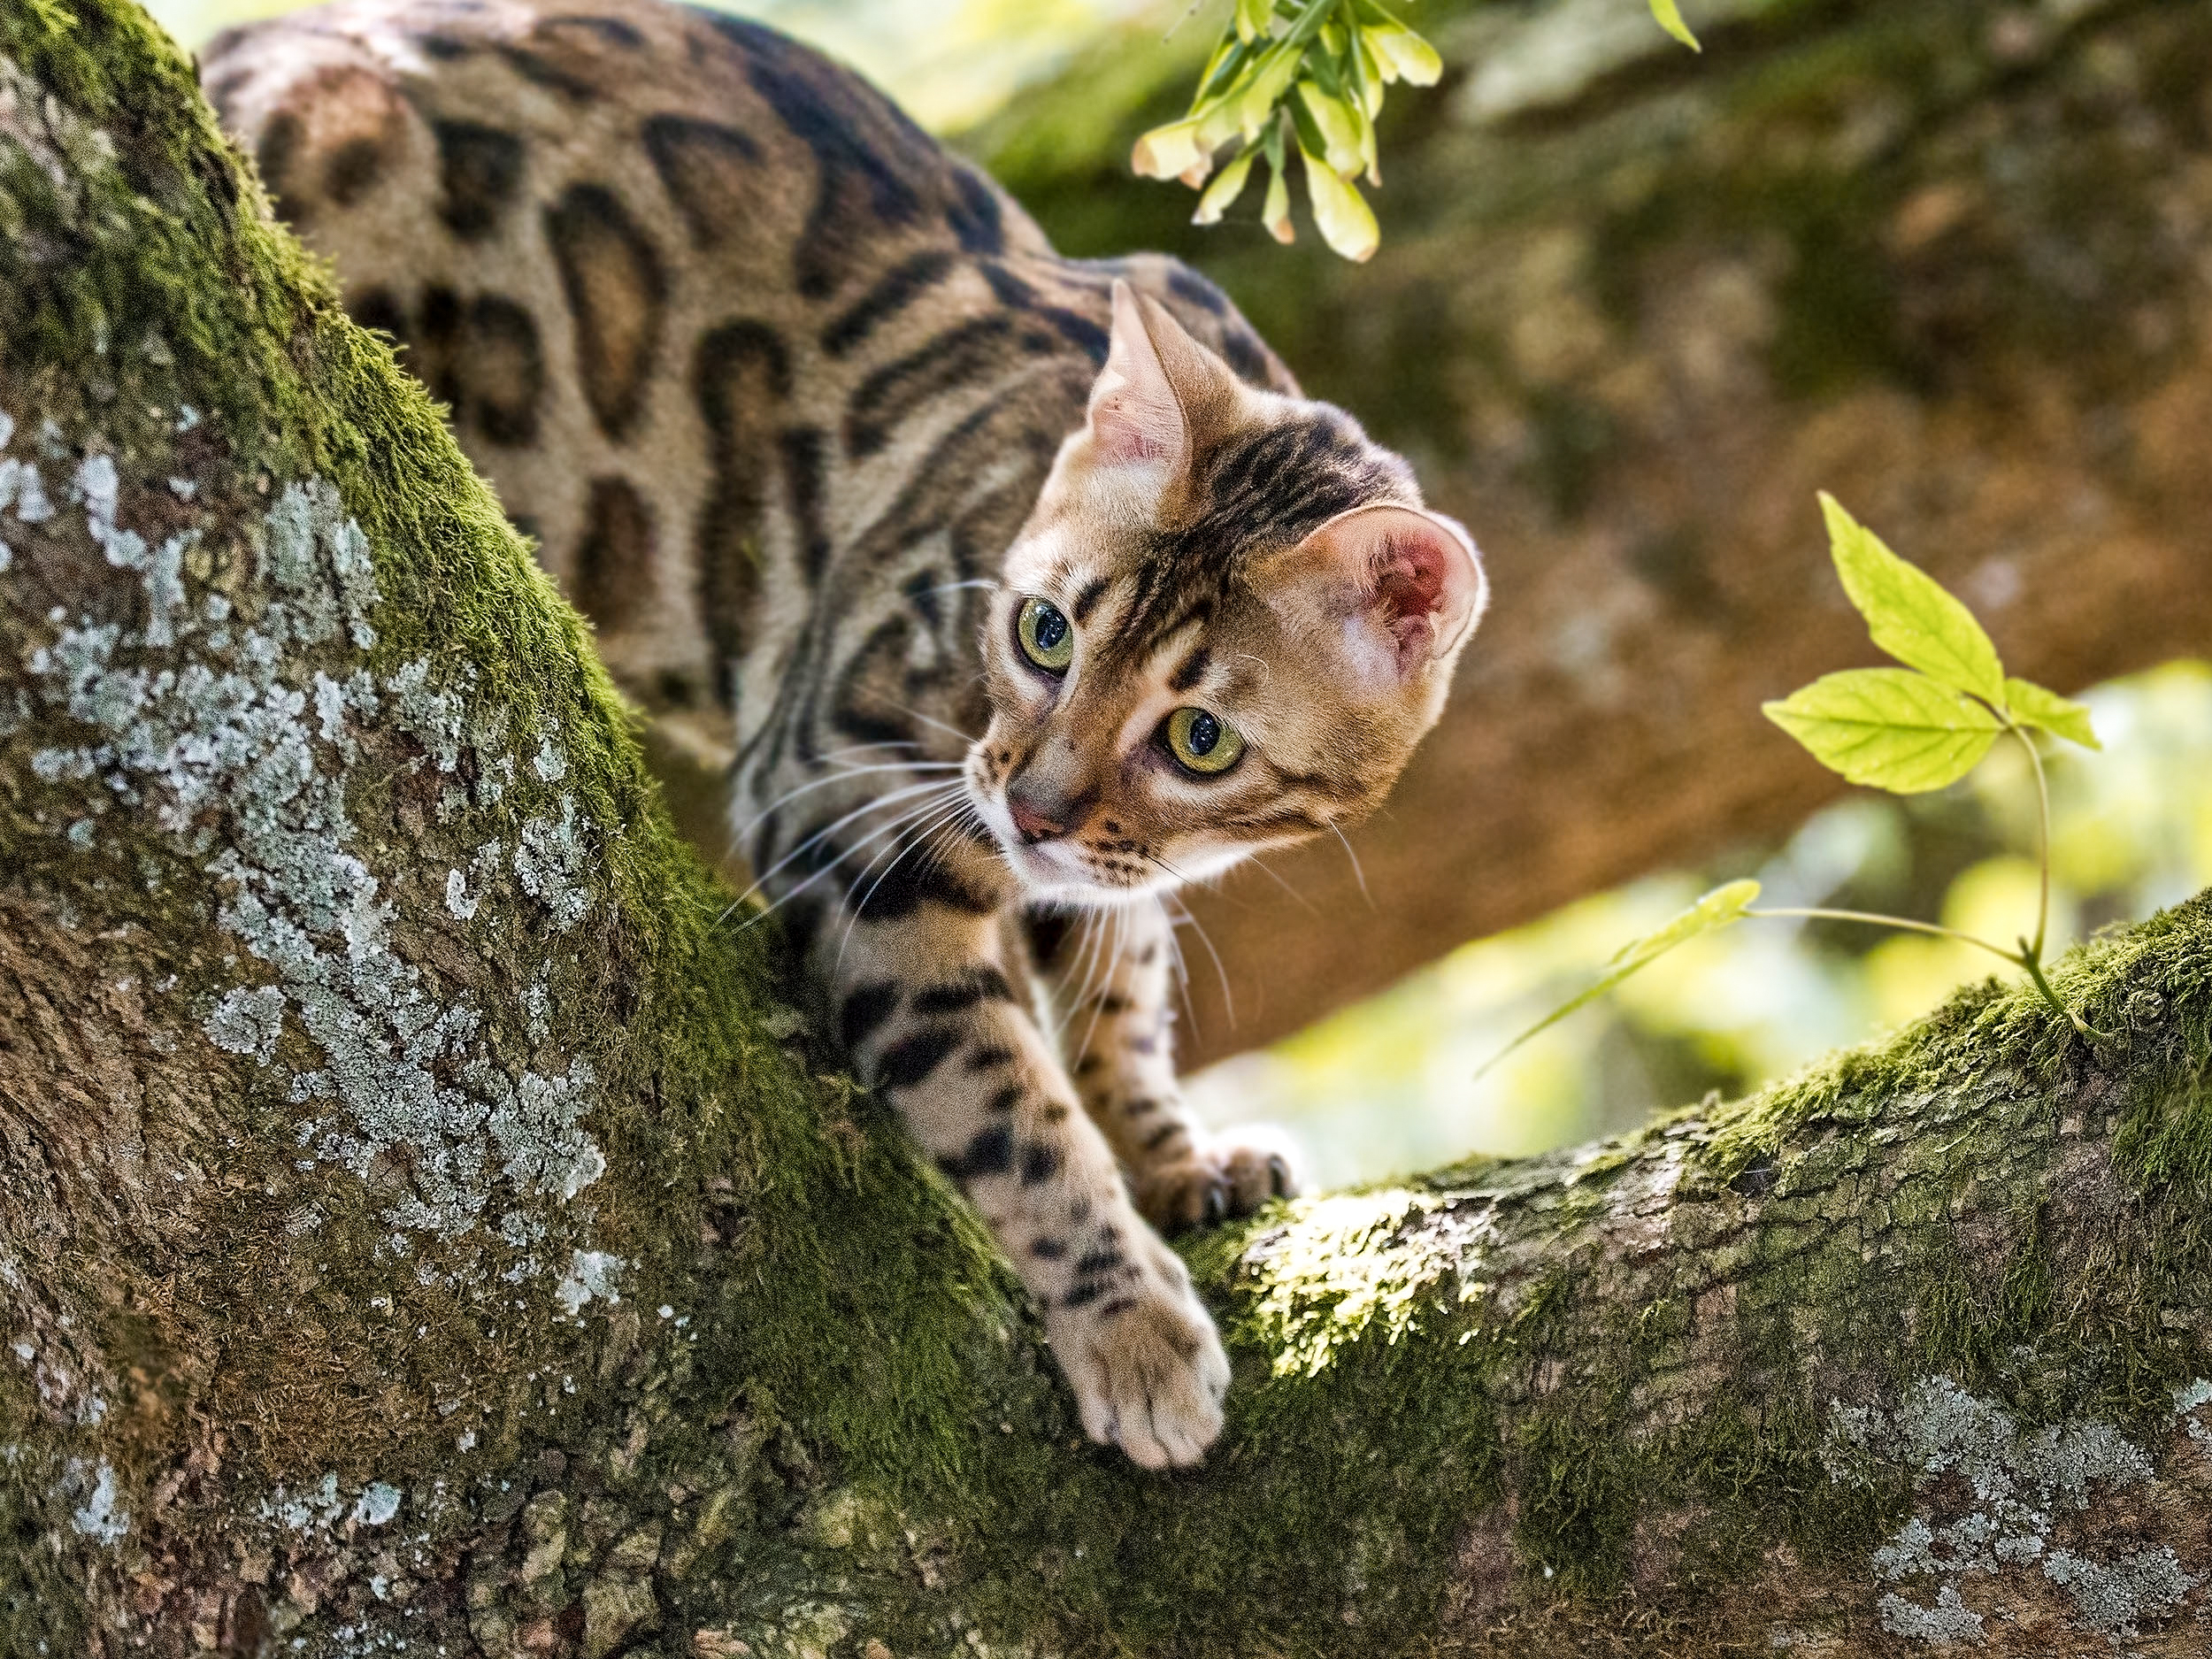 Bengalí adulto trepando a un árbol al aire libre